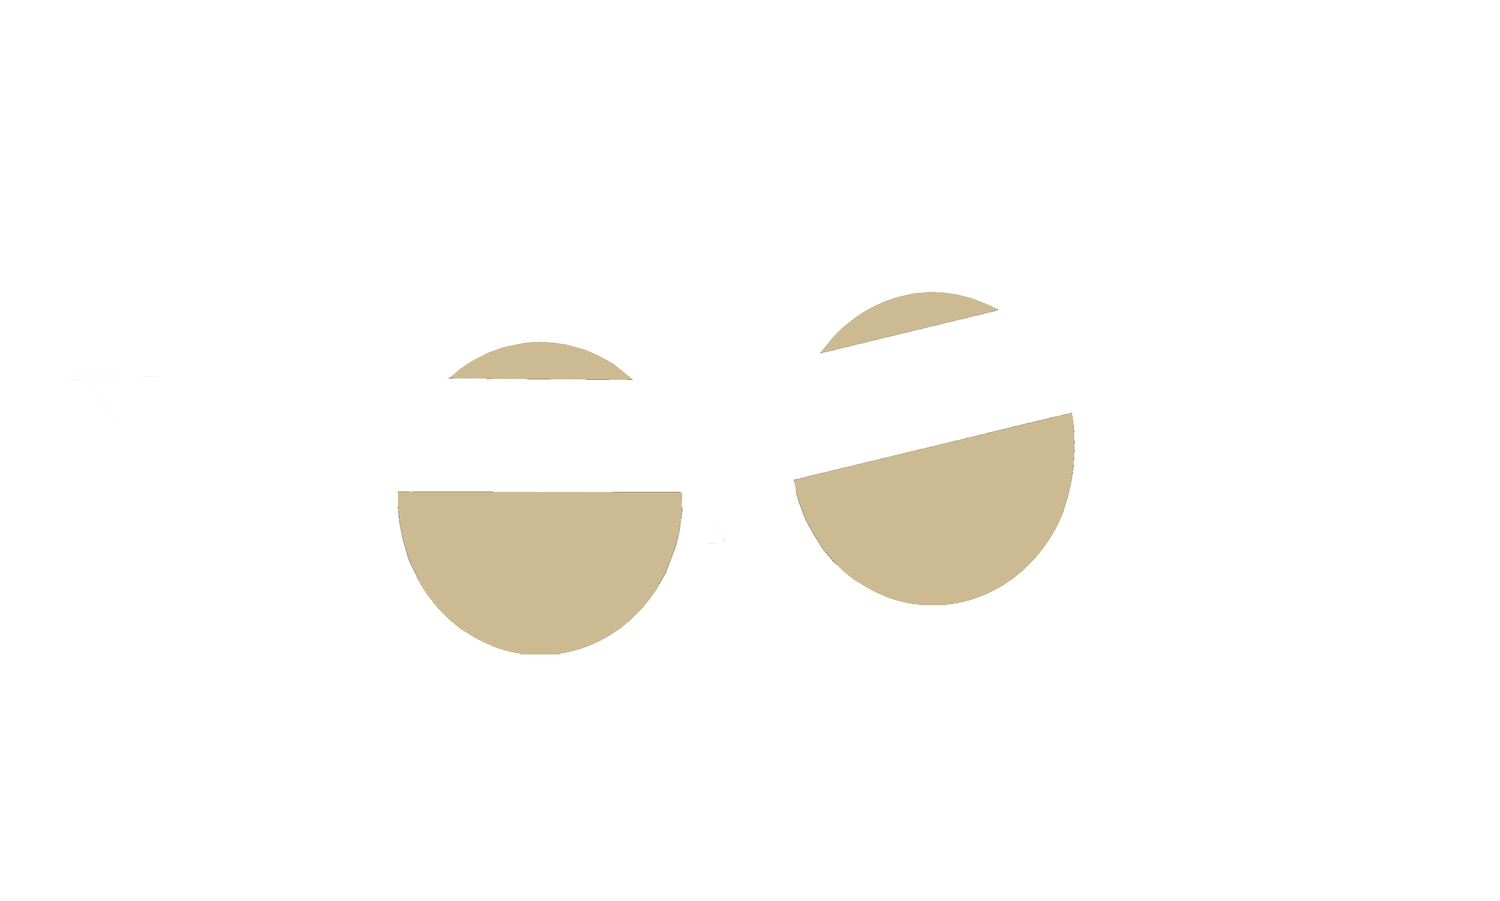 Langley Flight Foundation